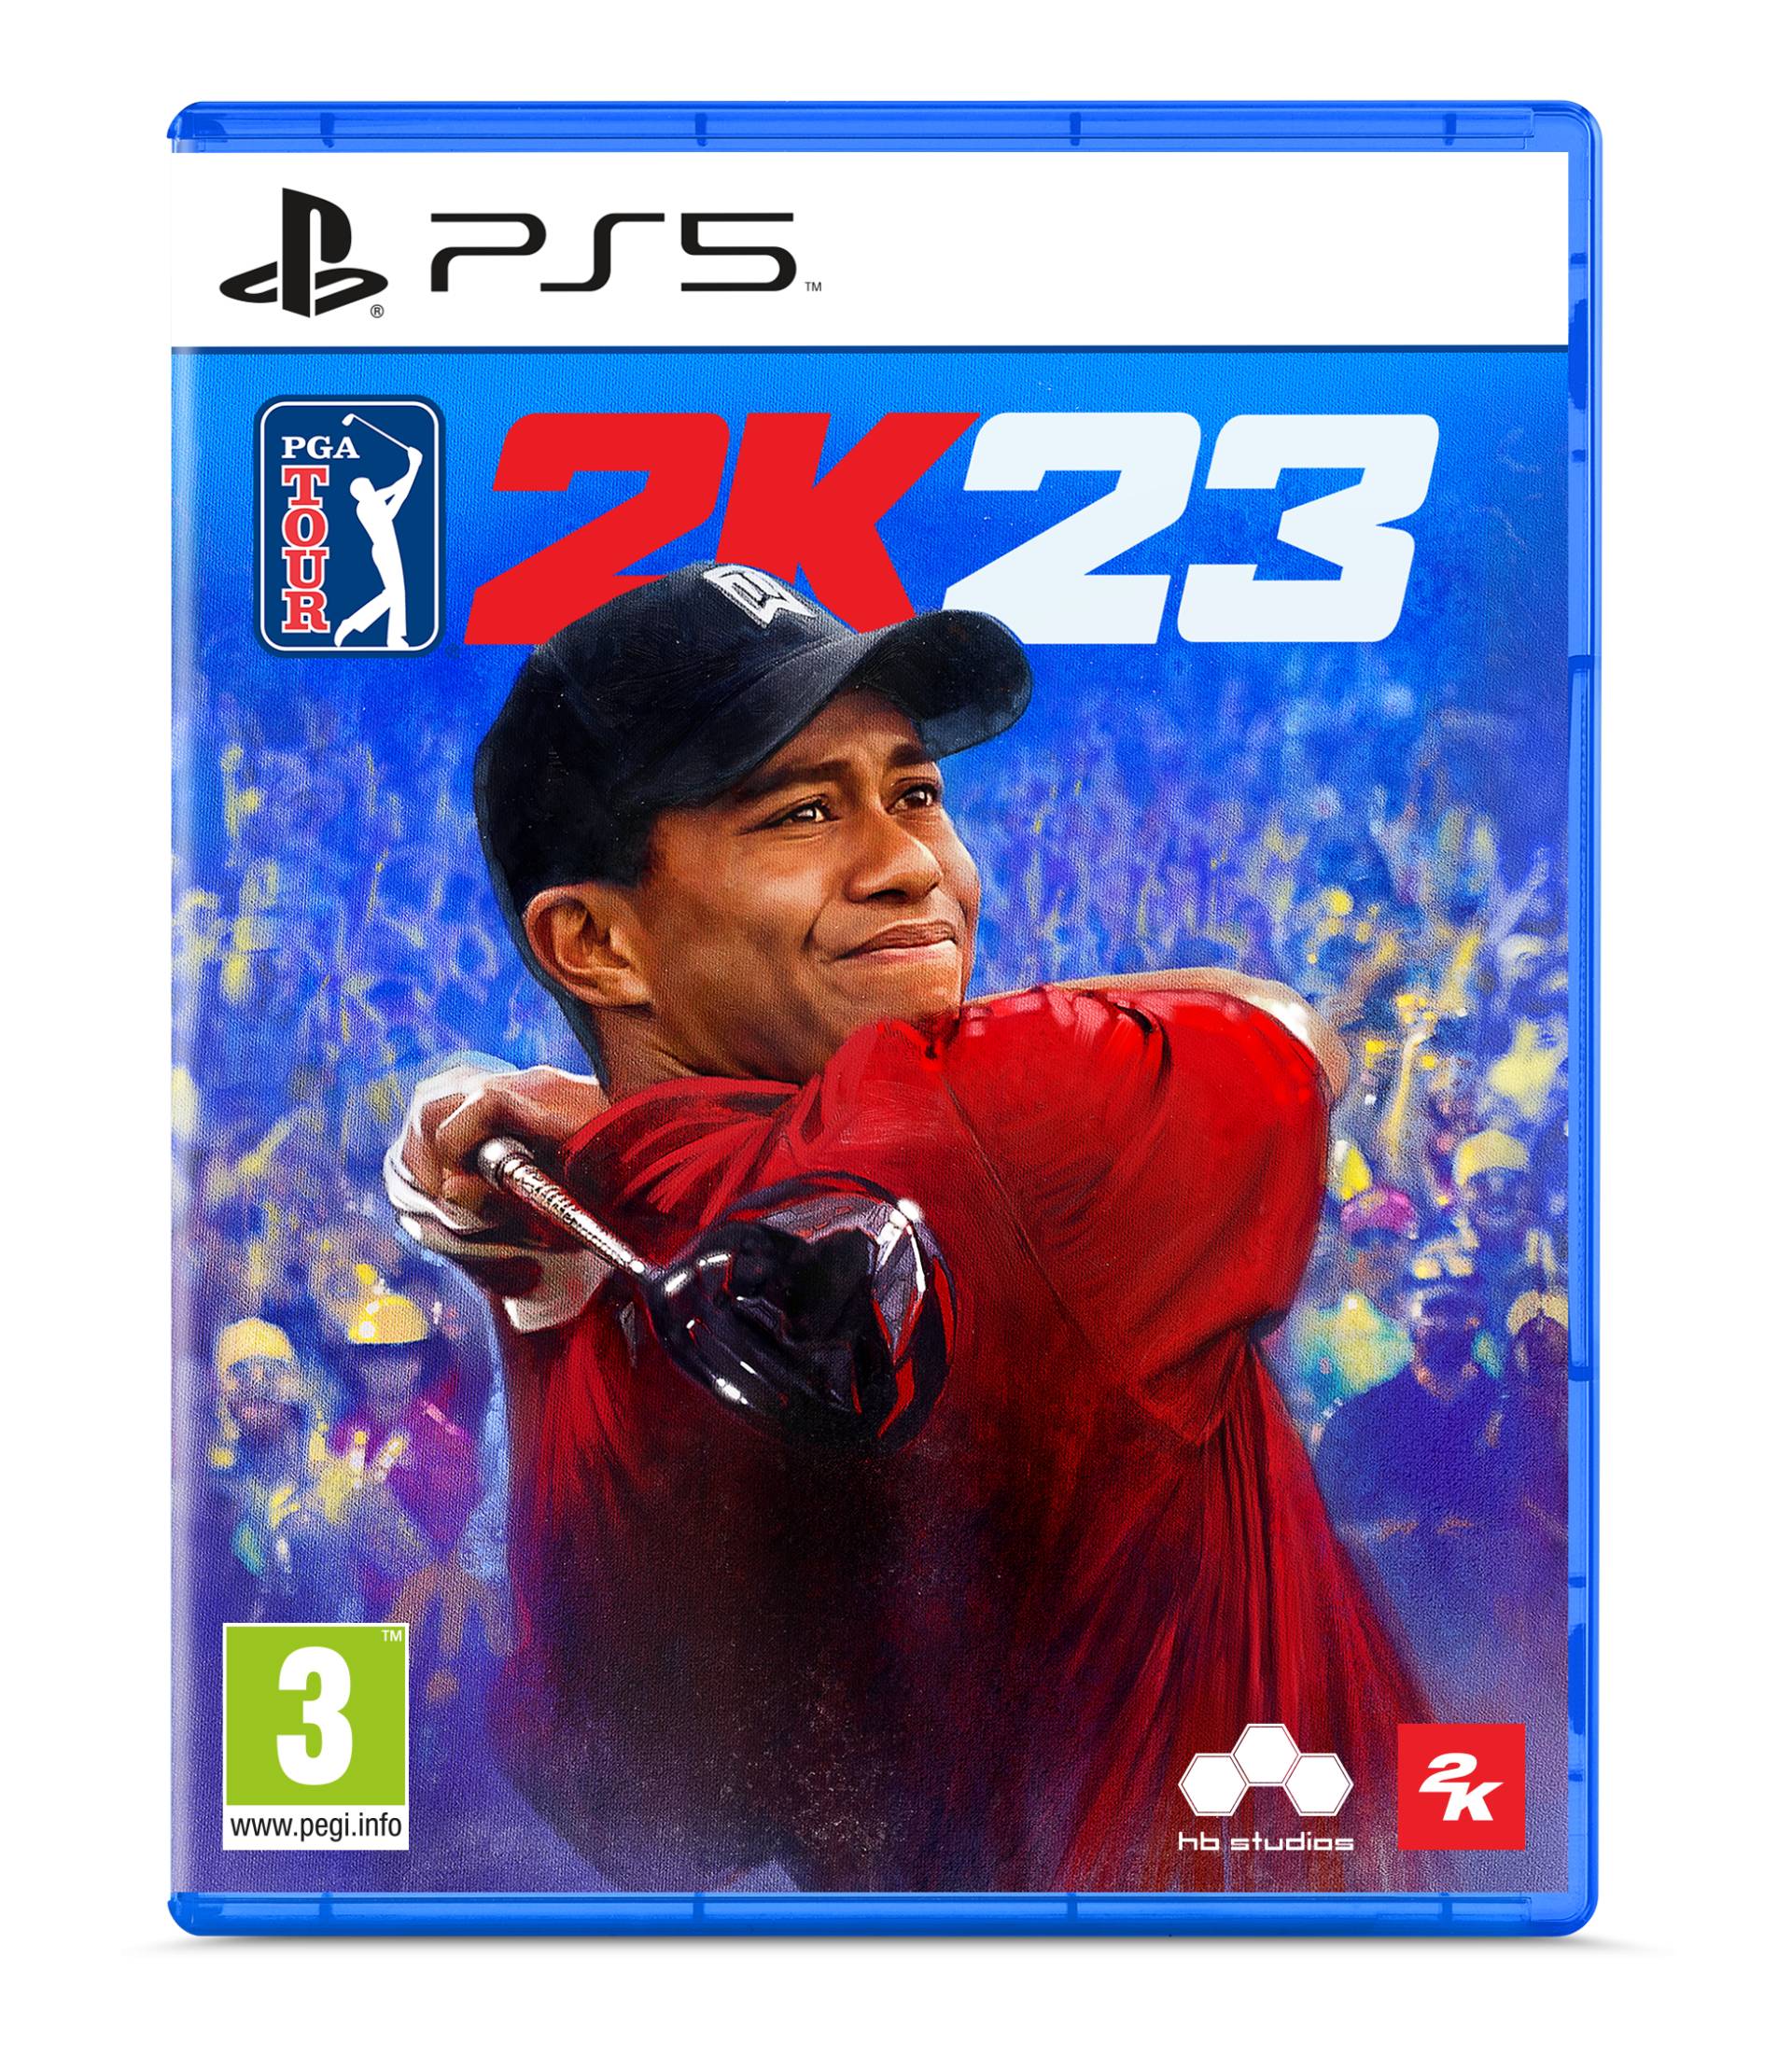 PGA Tour 2K23 von 2K Games